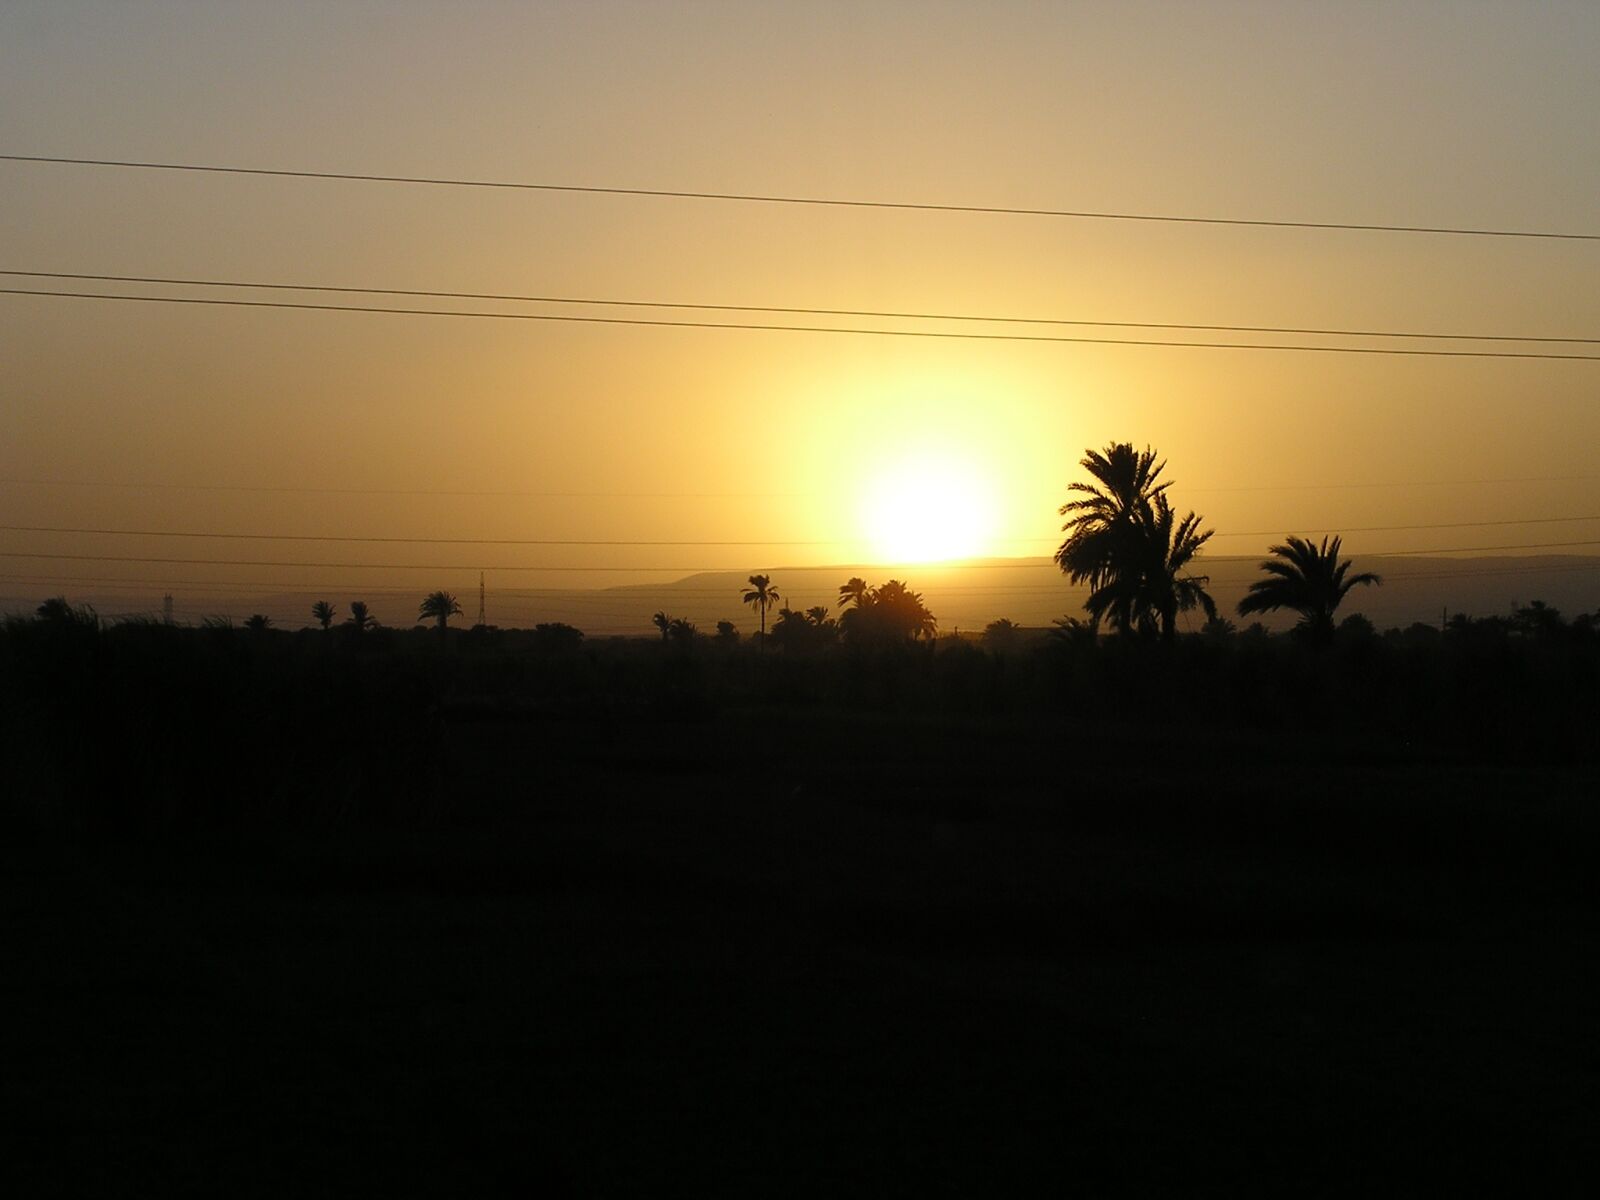 Olympus C740UZ sample photo. Egypt, sunset, landscape photography